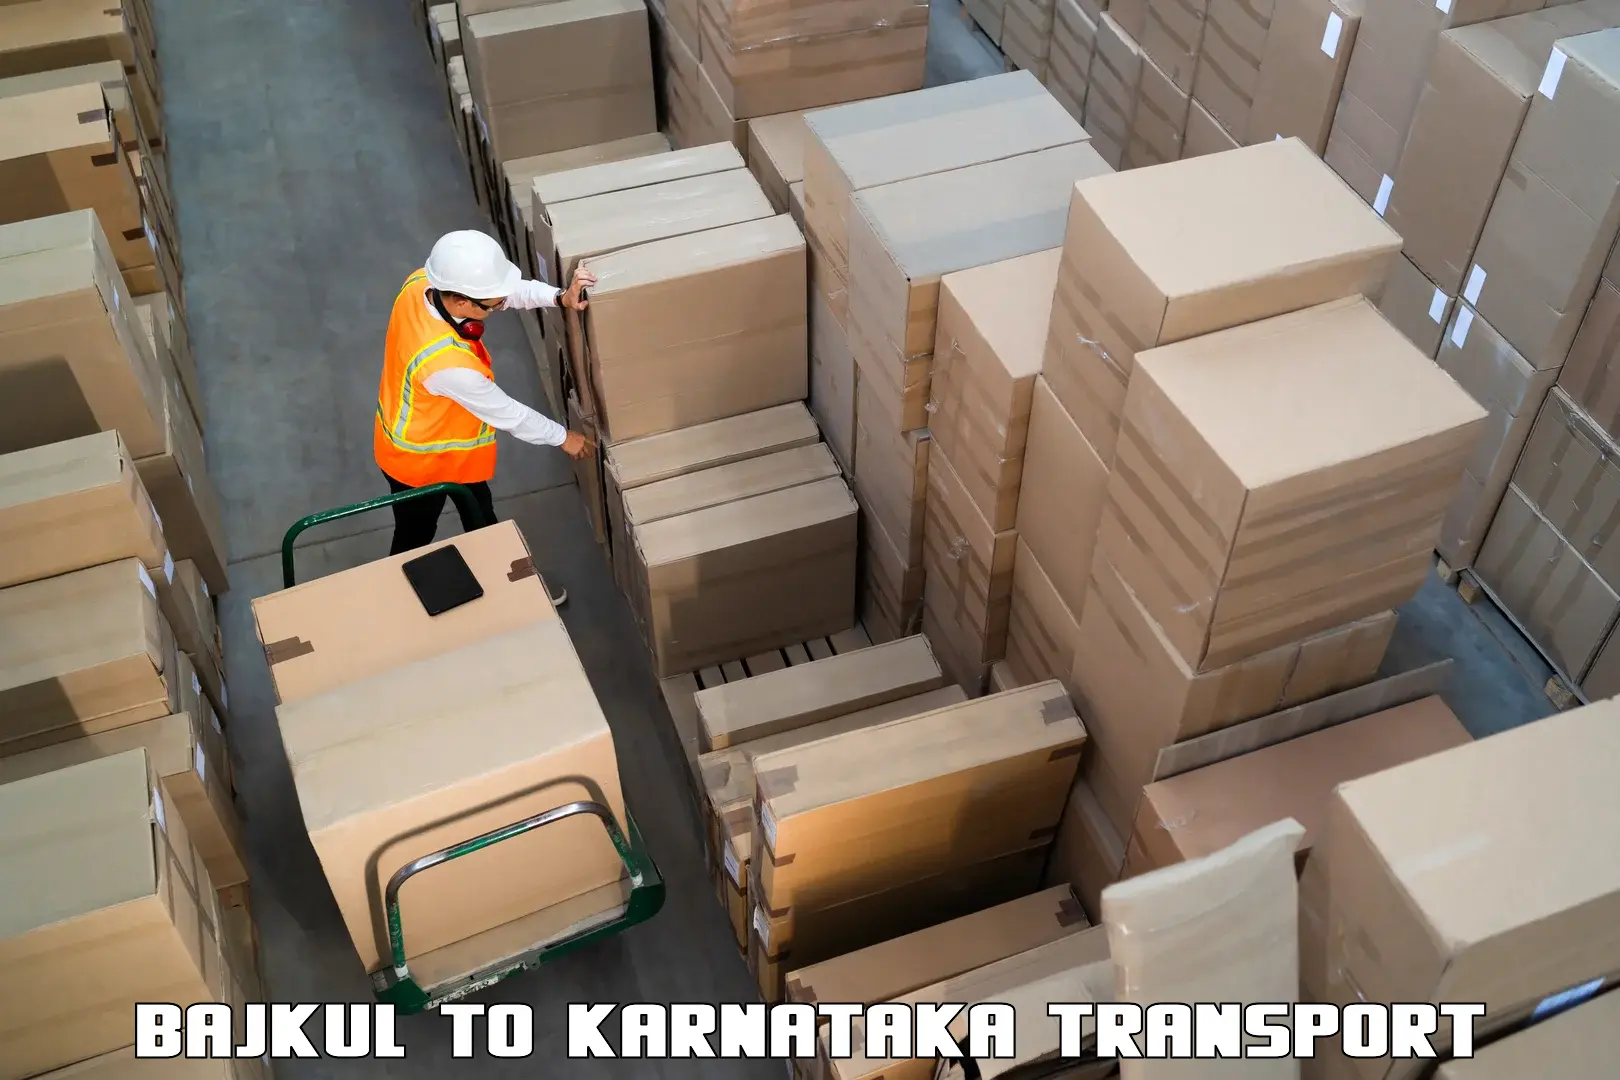 Parcel transport services Bajkul to Mangalore Port